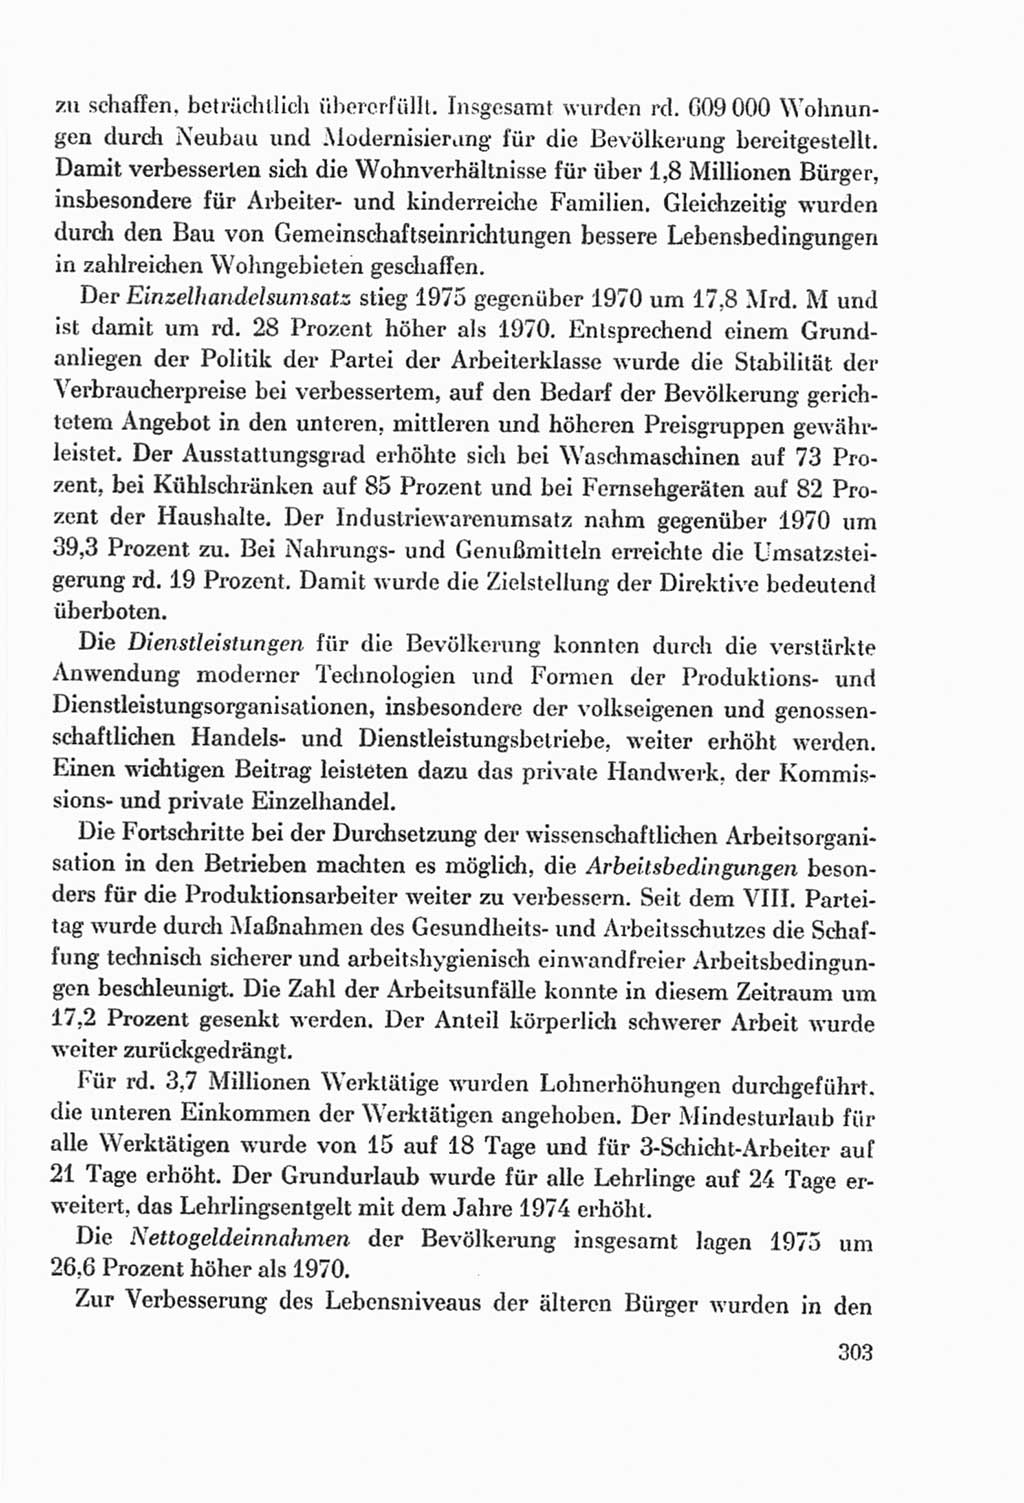 Protokoll der Verhandlungen des Ⅸ. Parteitages der Sozialistischen Einheitspartei Deutschlands (SED) [Deutsche Demokratische Republik (DDR)] 1976, Band 2, Seite 303 (Prot. Verh. Ⅸ. PT SED DDR 1976, Bd. 2, S. 303)